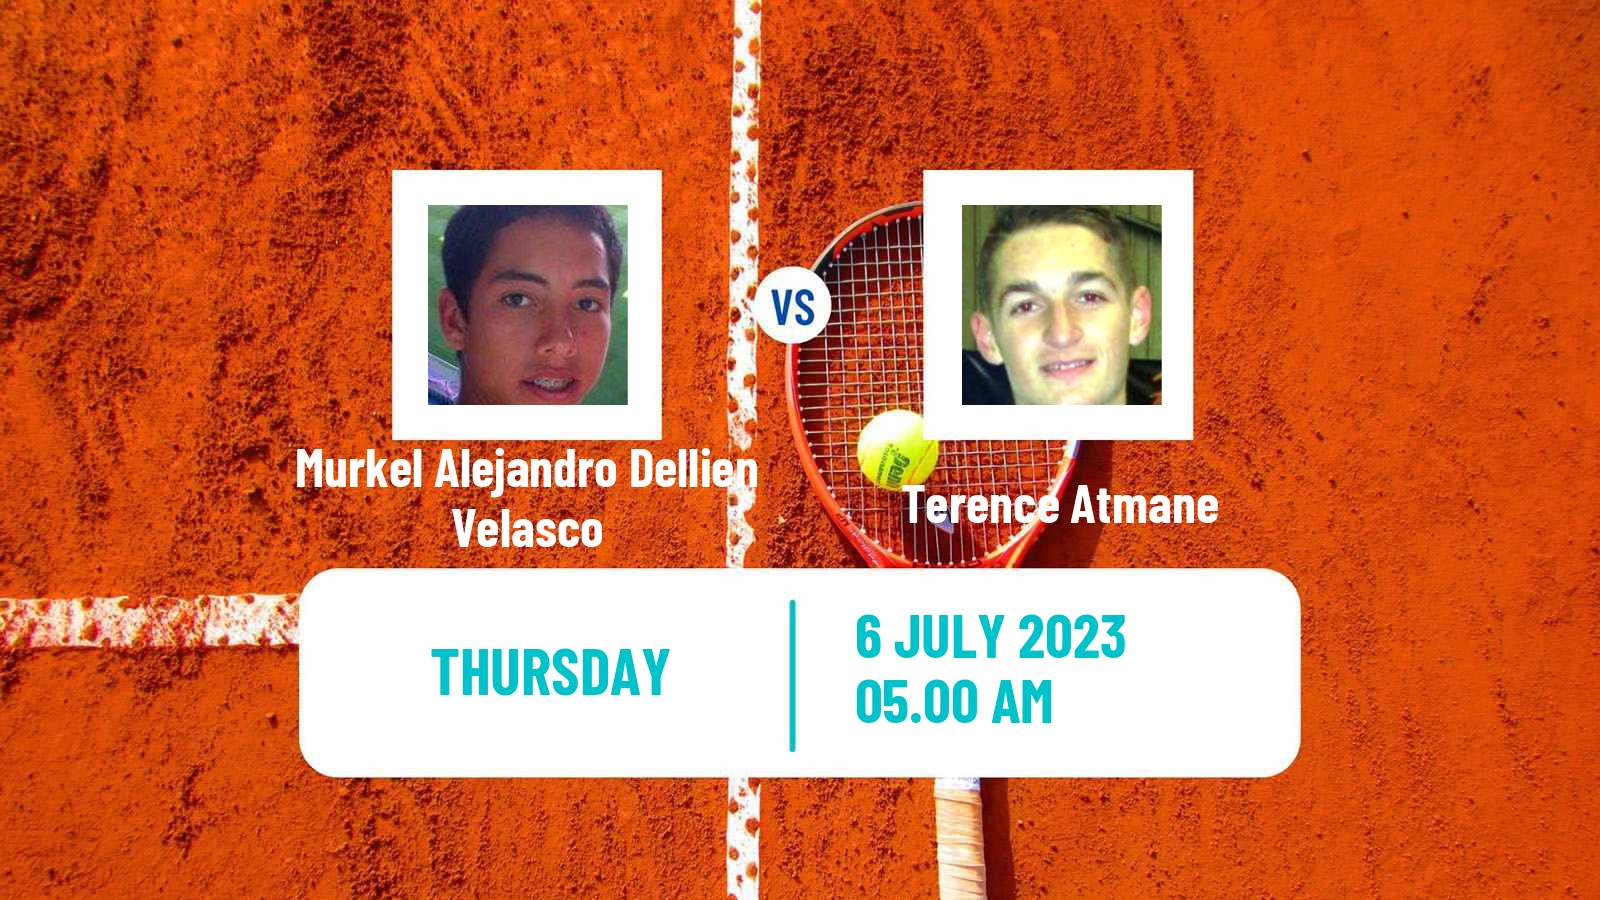 Tennis Troyes Challenger Men Murkel Alejandro Dellien Velasco - Terence Atmane